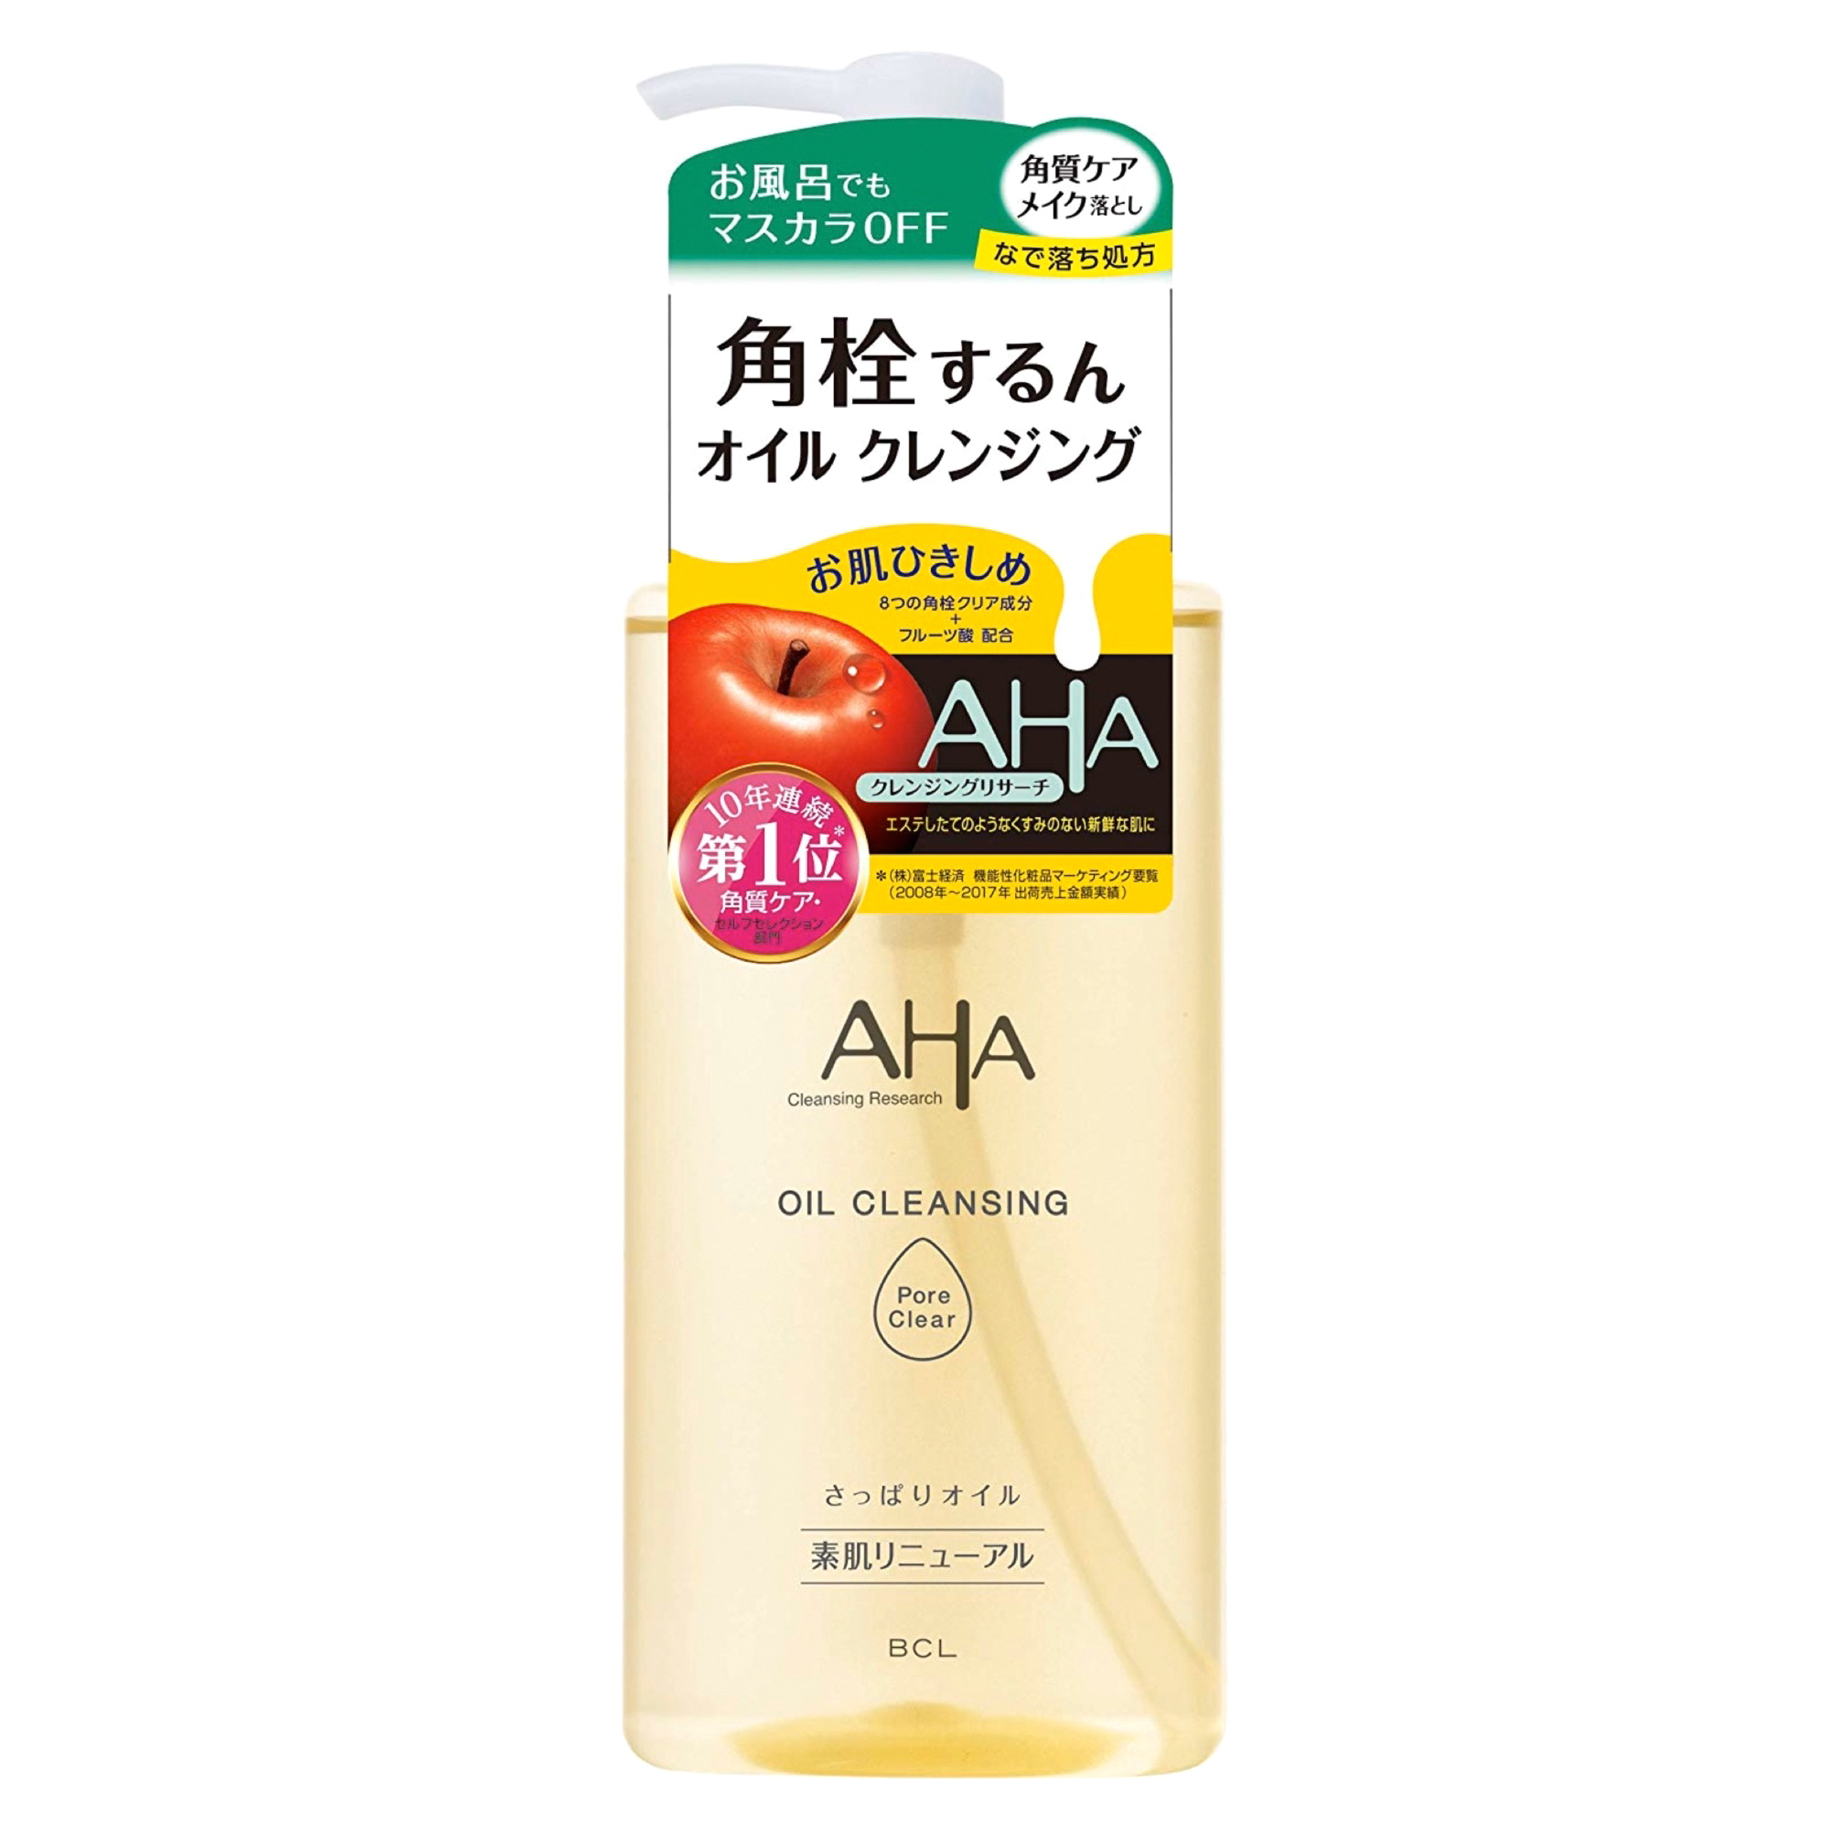 Гидрофильное масло AHA  для снятия макияжа с фруктовыми кислотами 200 мл сыворотка biore для умывания и снятия макияжа 230 мл